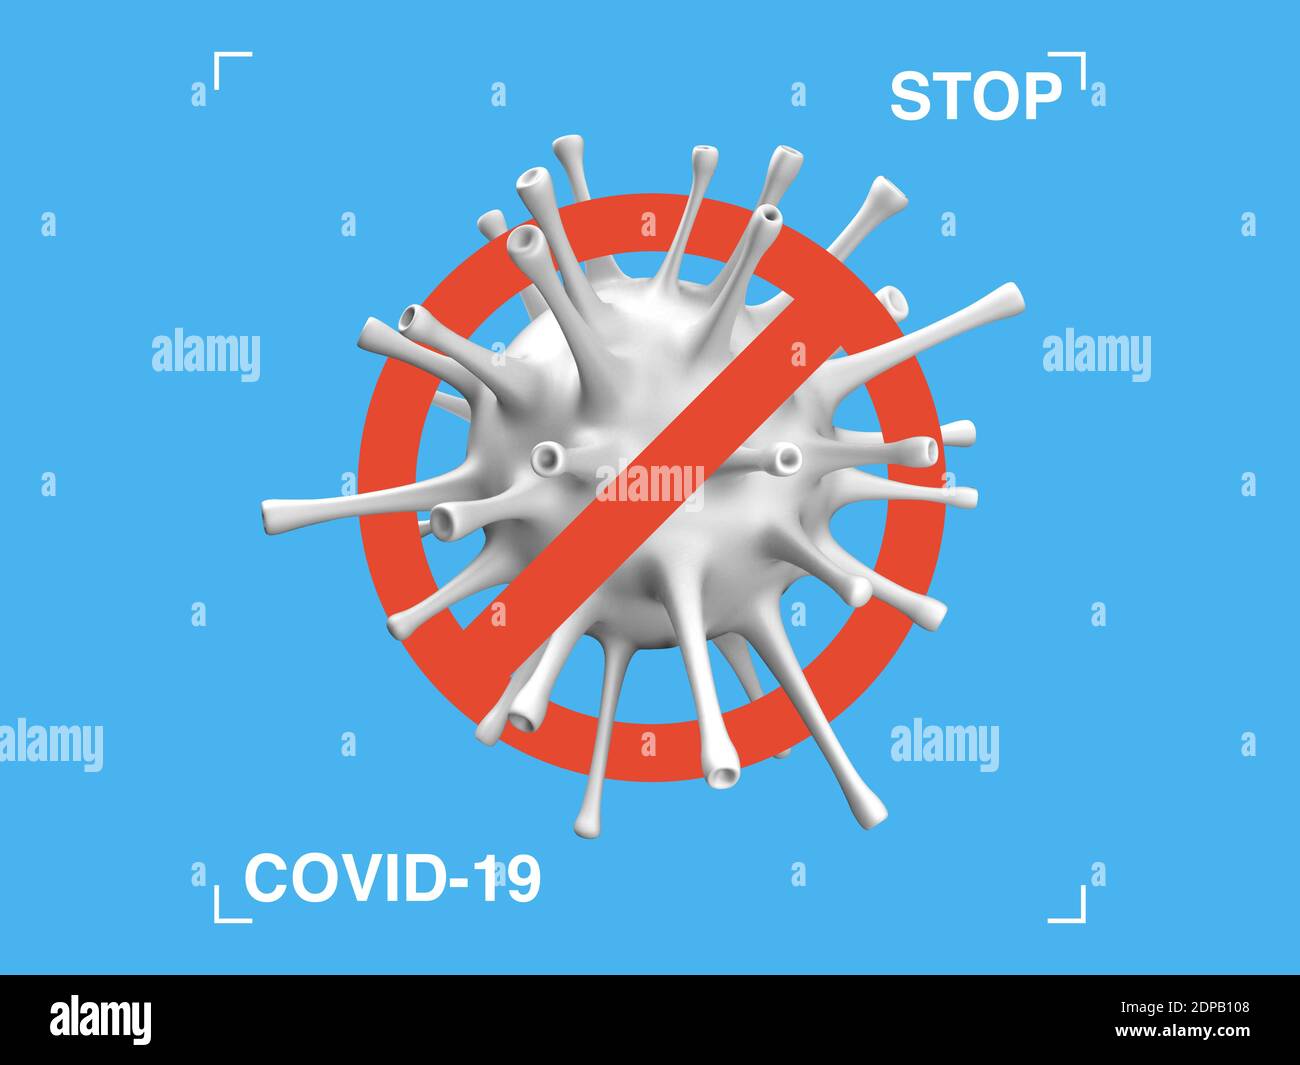 Arrêter le symbole 3D COVID-19. Bannière d'interdiction. Résumé de la pandémie Illustration de fond. Logo du coronavirus dans un style de design moderne. Vecteur EPS 10 Illustration de Vecteur